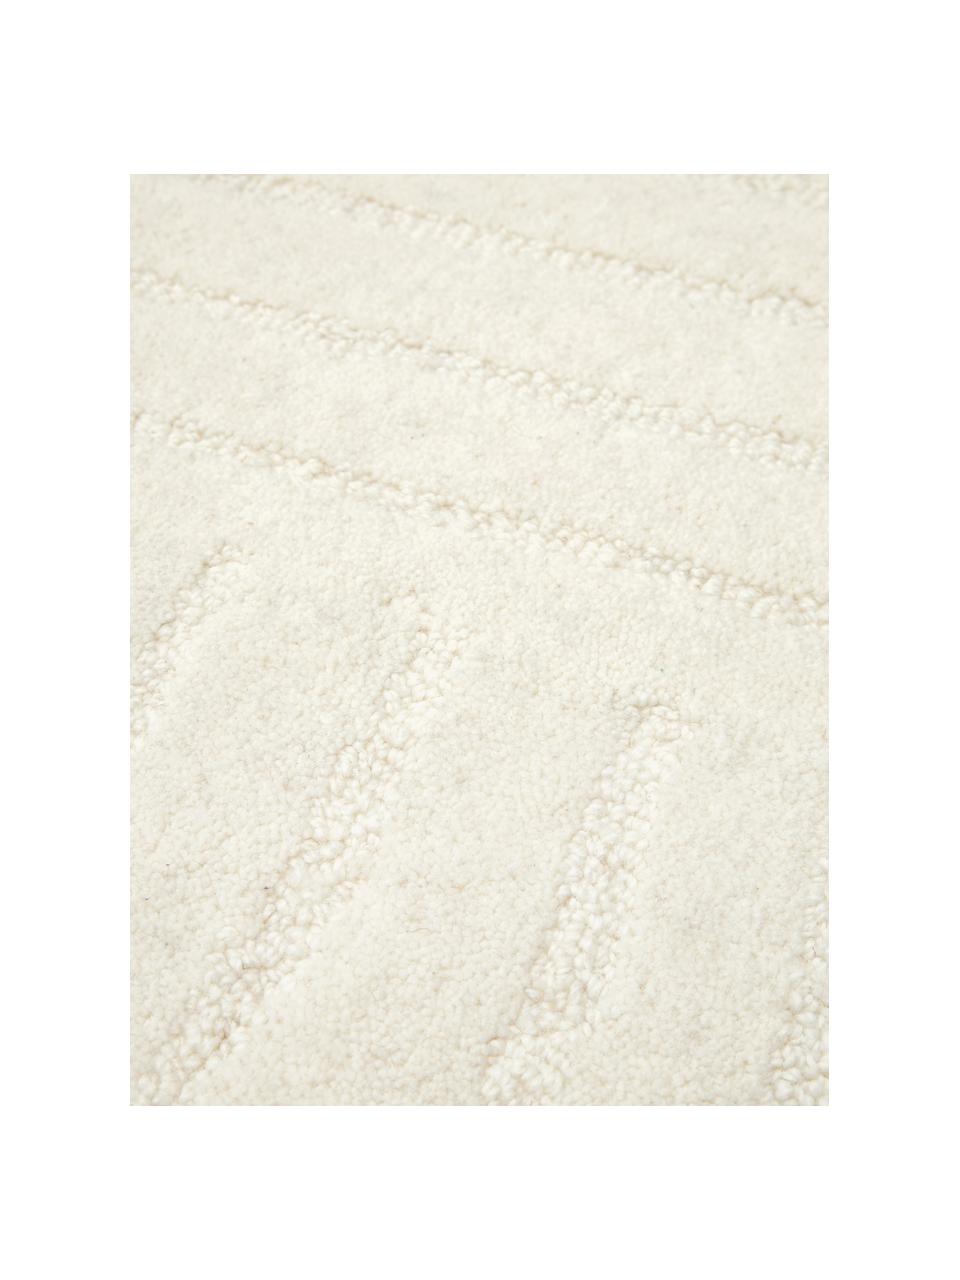 Tapis rond en laine tuftée main Mason, Blanc crème, Ø 120 cm (taille S)